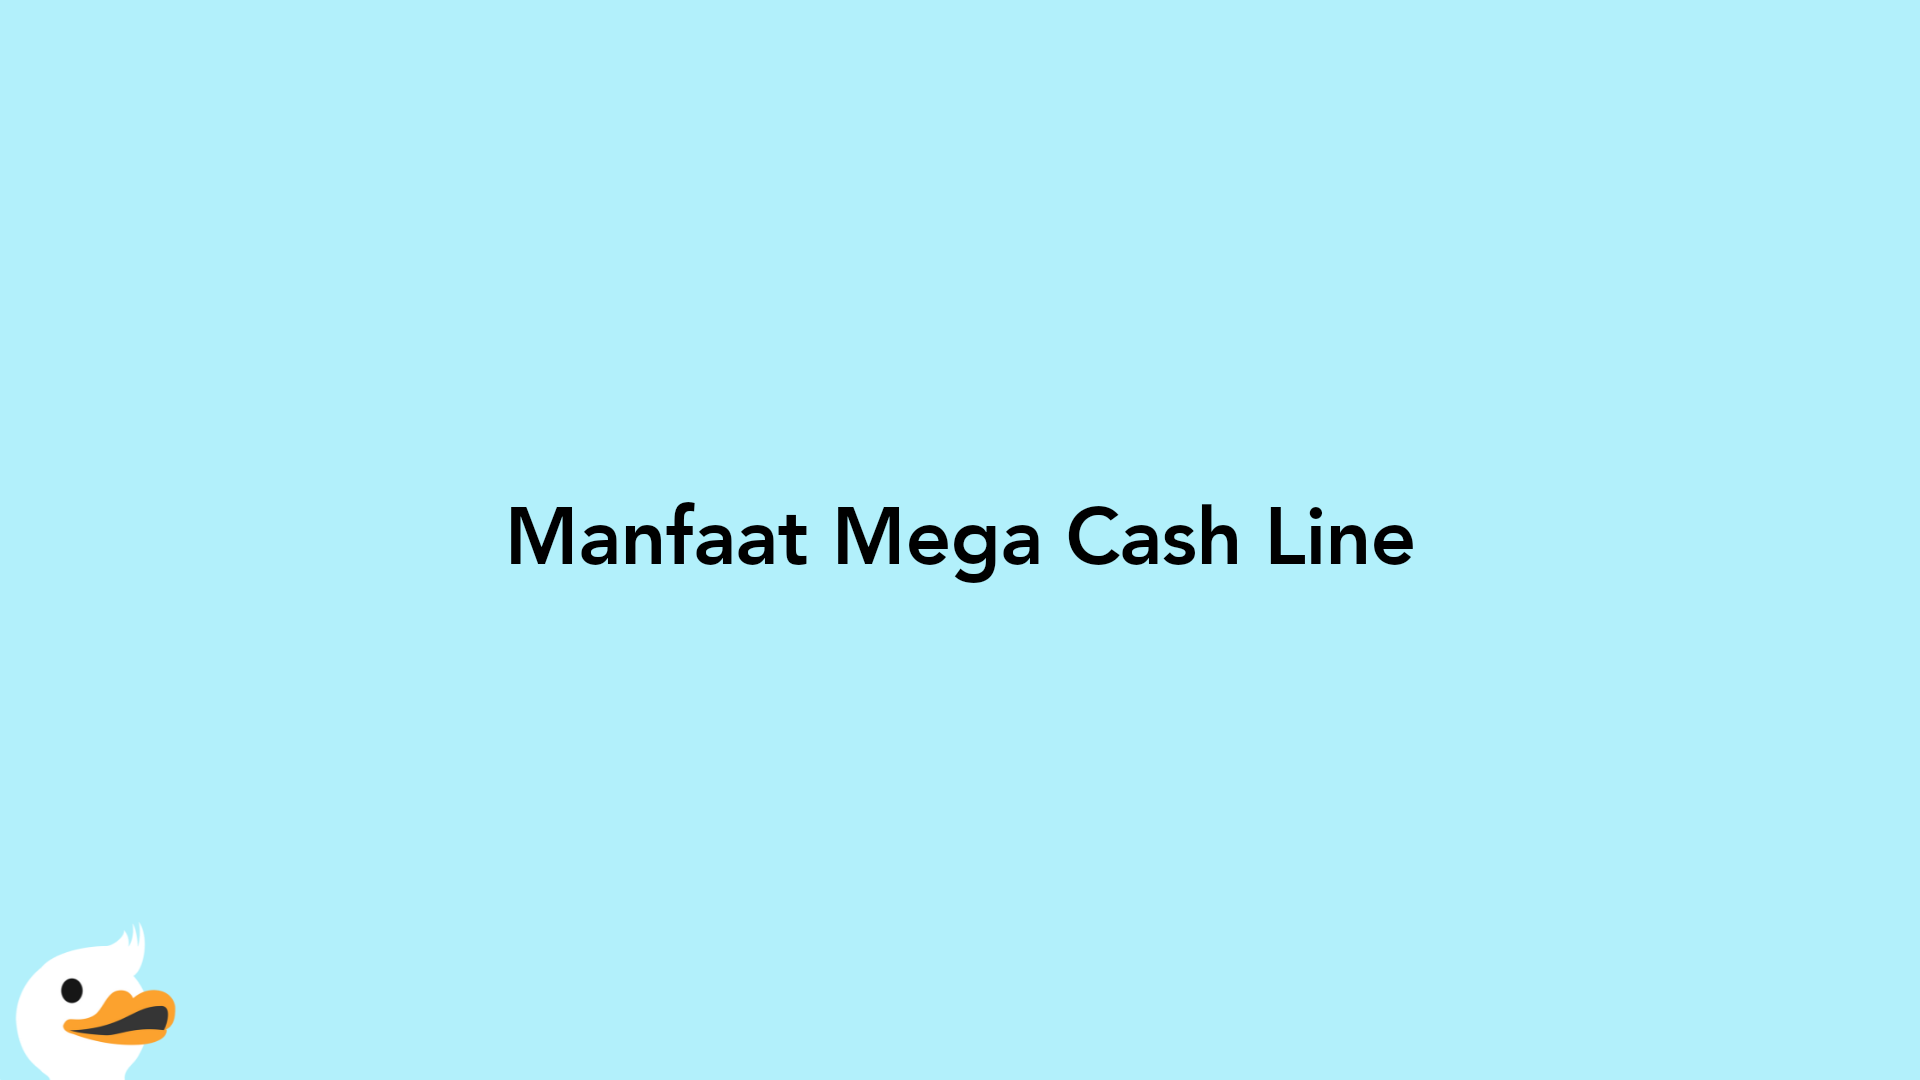 Manfaat Mega Cash Line